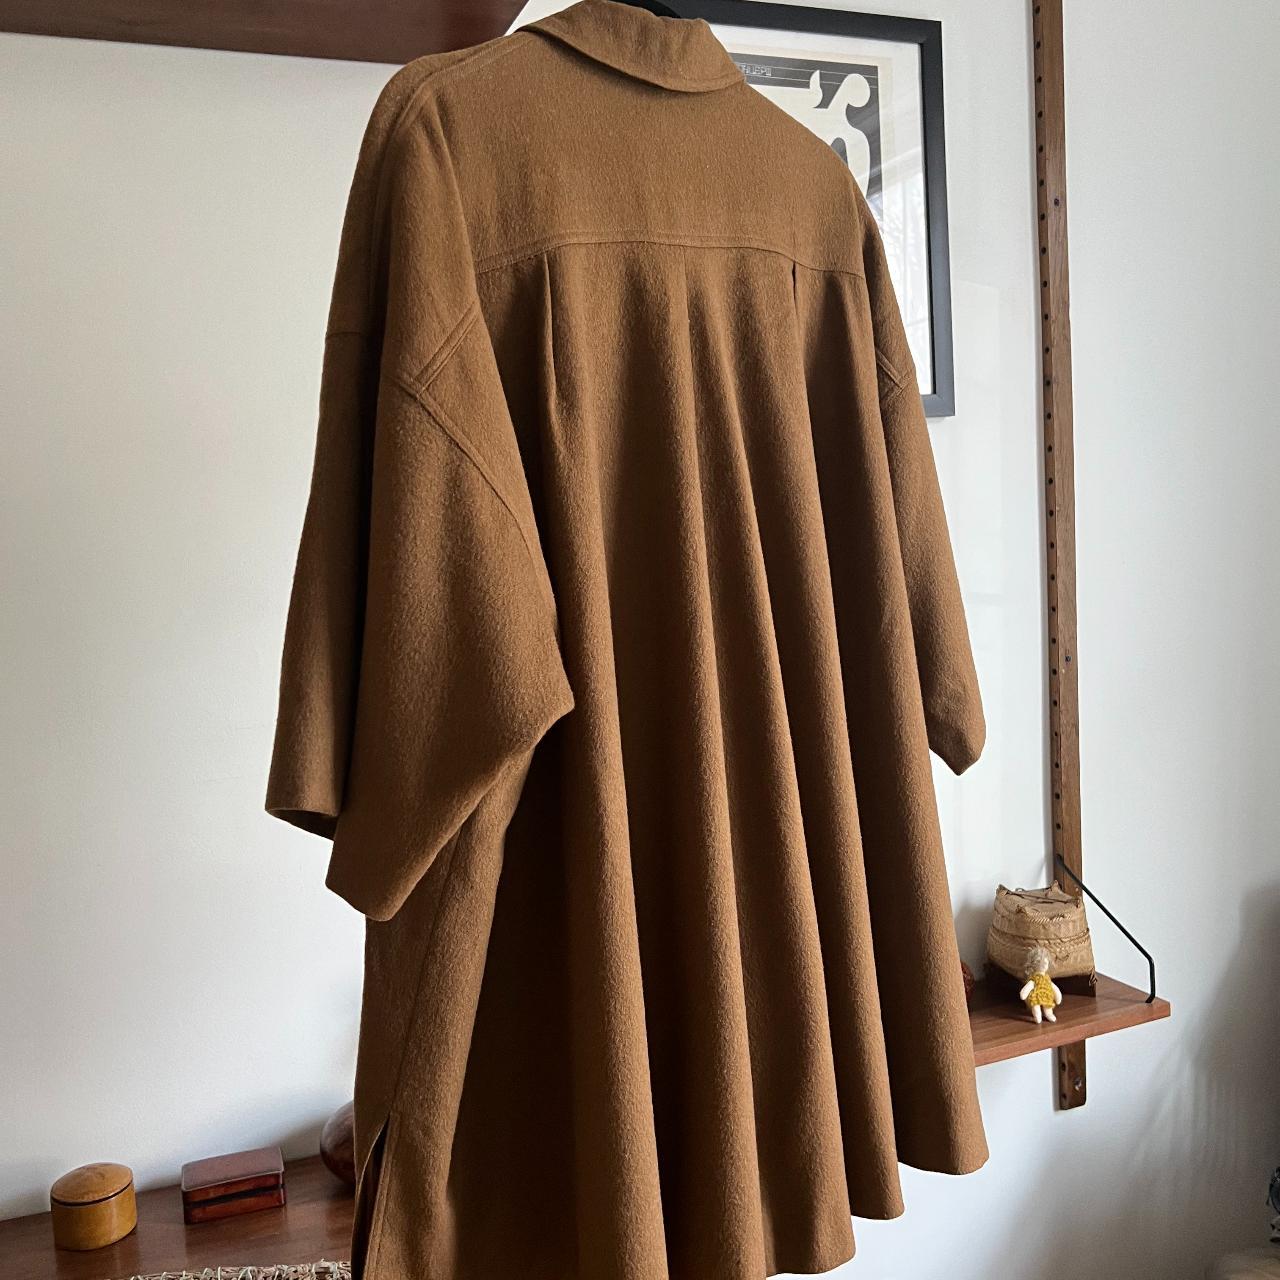 Dries Van Noten Women's Tan and Brown Coat